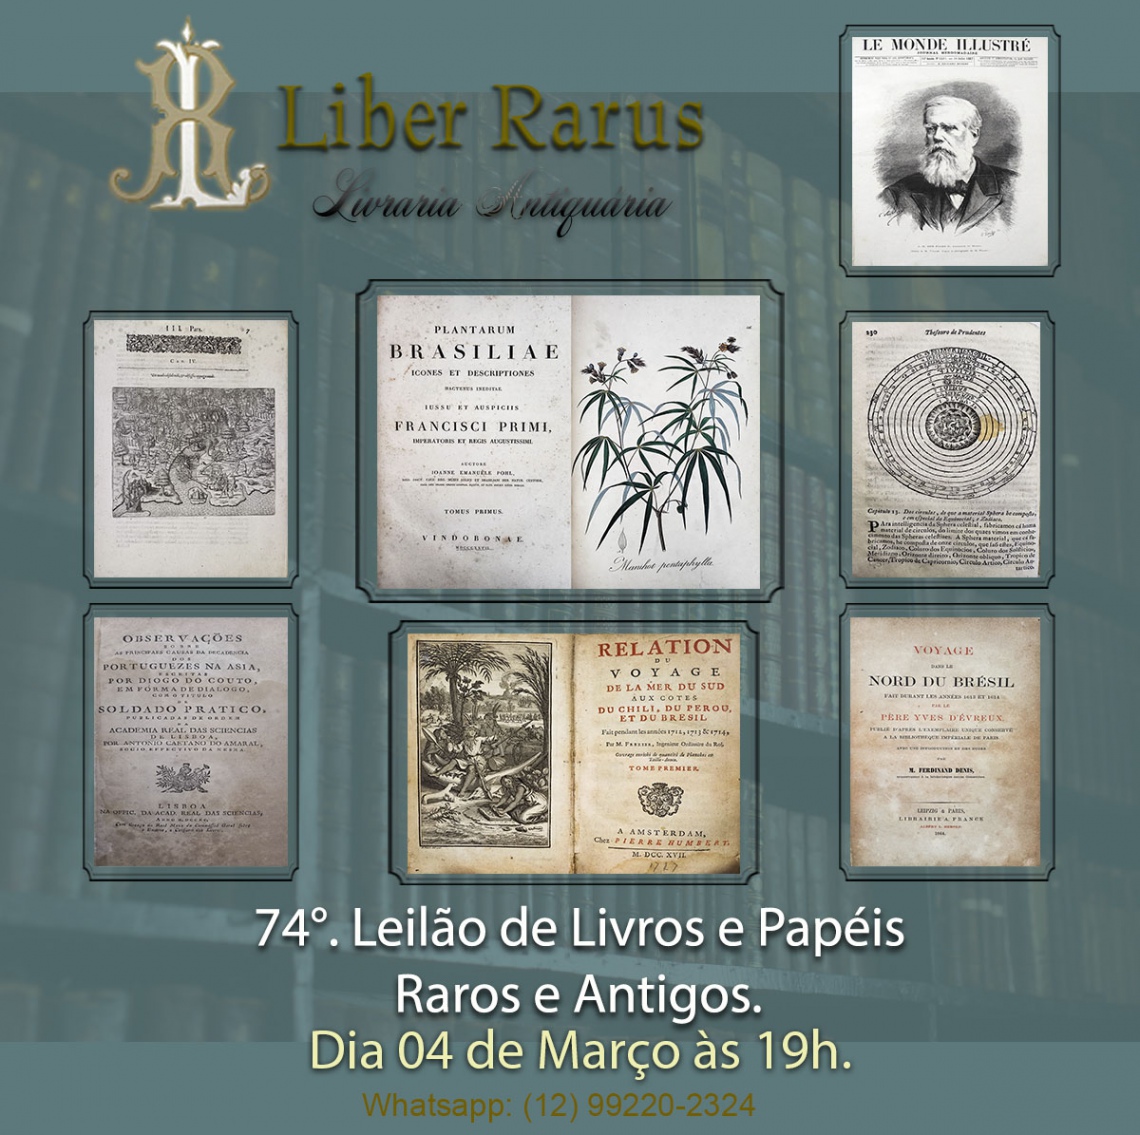 74º Leilão de Livros e Papéis Raros e Antigos - Liber Rarus